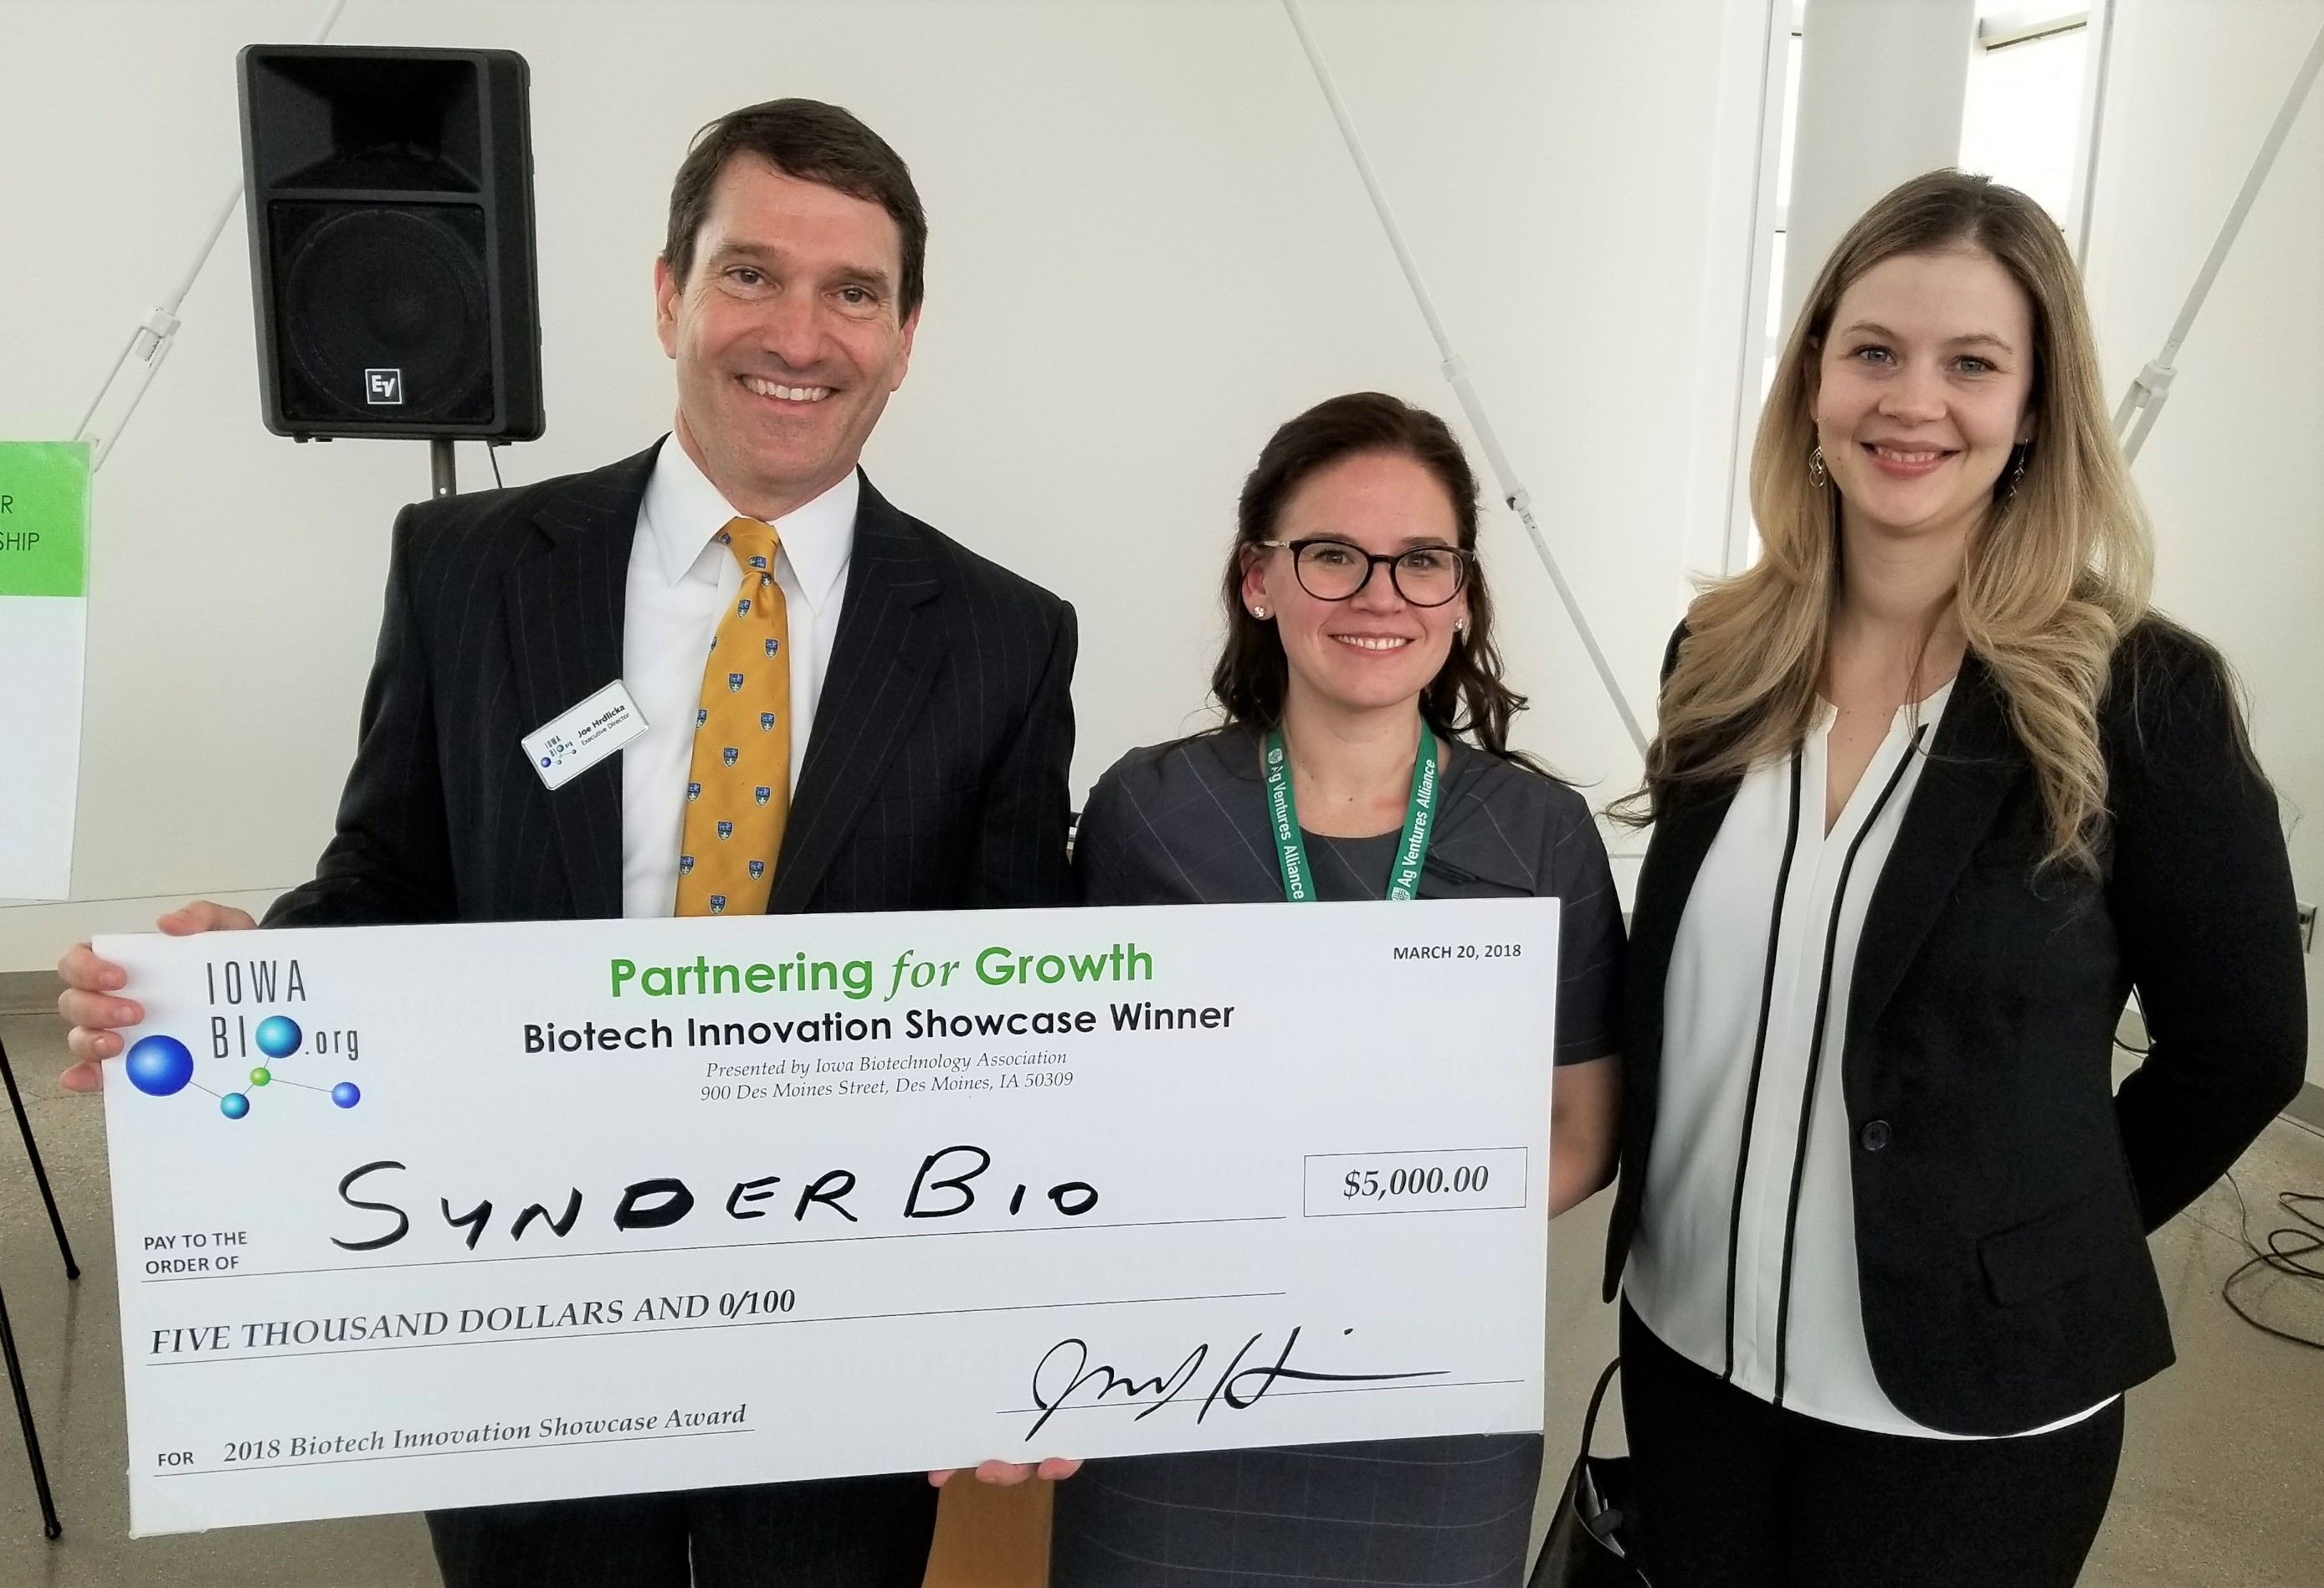 SynderBio top company at biotech showcase; Robert Riley Jr. receives leadership award